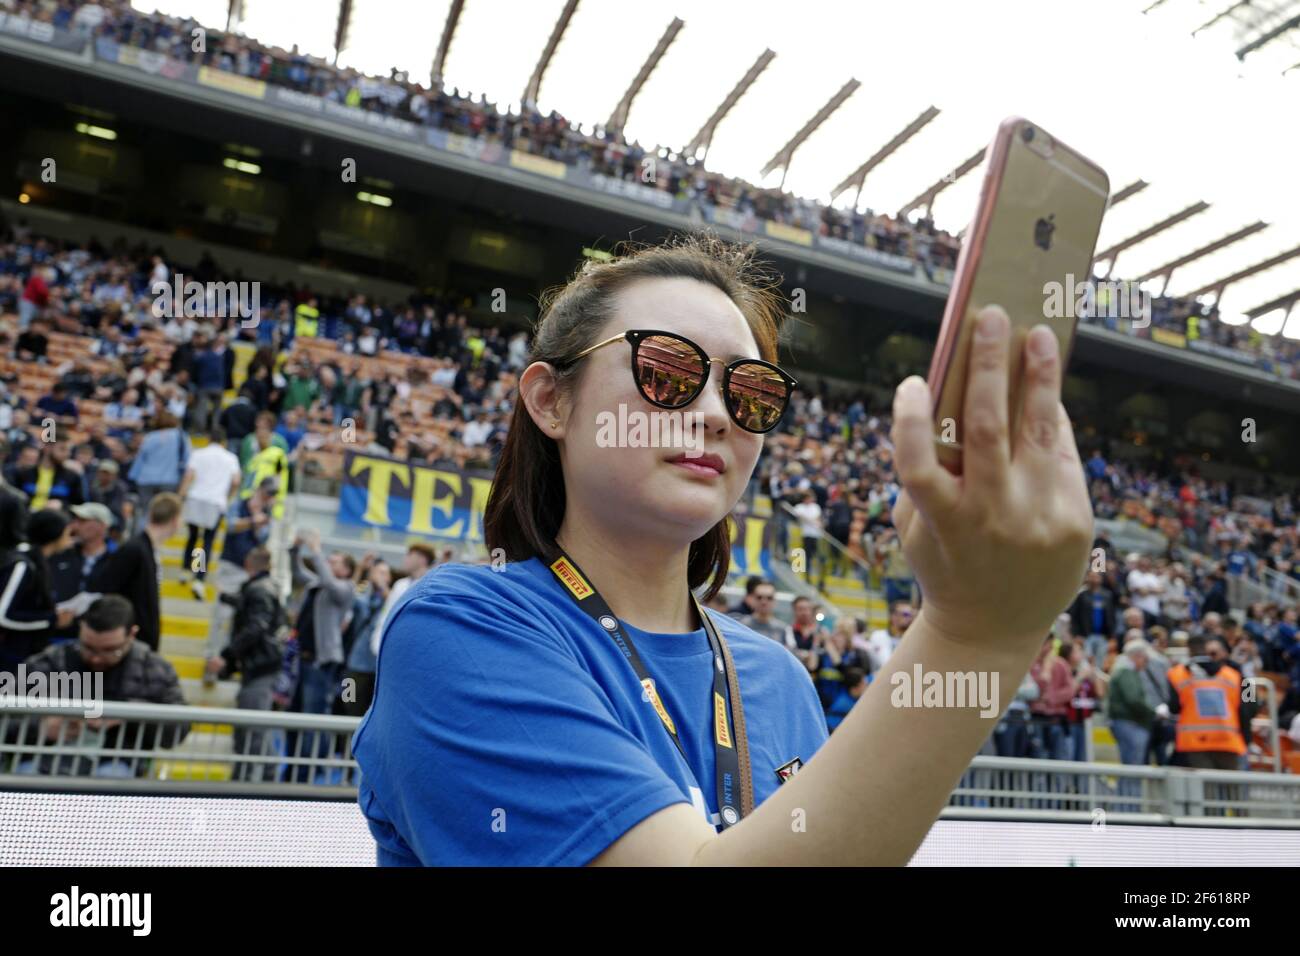 La ragazza cinese Inter Milan, tifoso di calcio, ha fatto un ritratto selfie con un iPhone allo stadio di calcio san siro, a Milano. Italia. Foto Stock